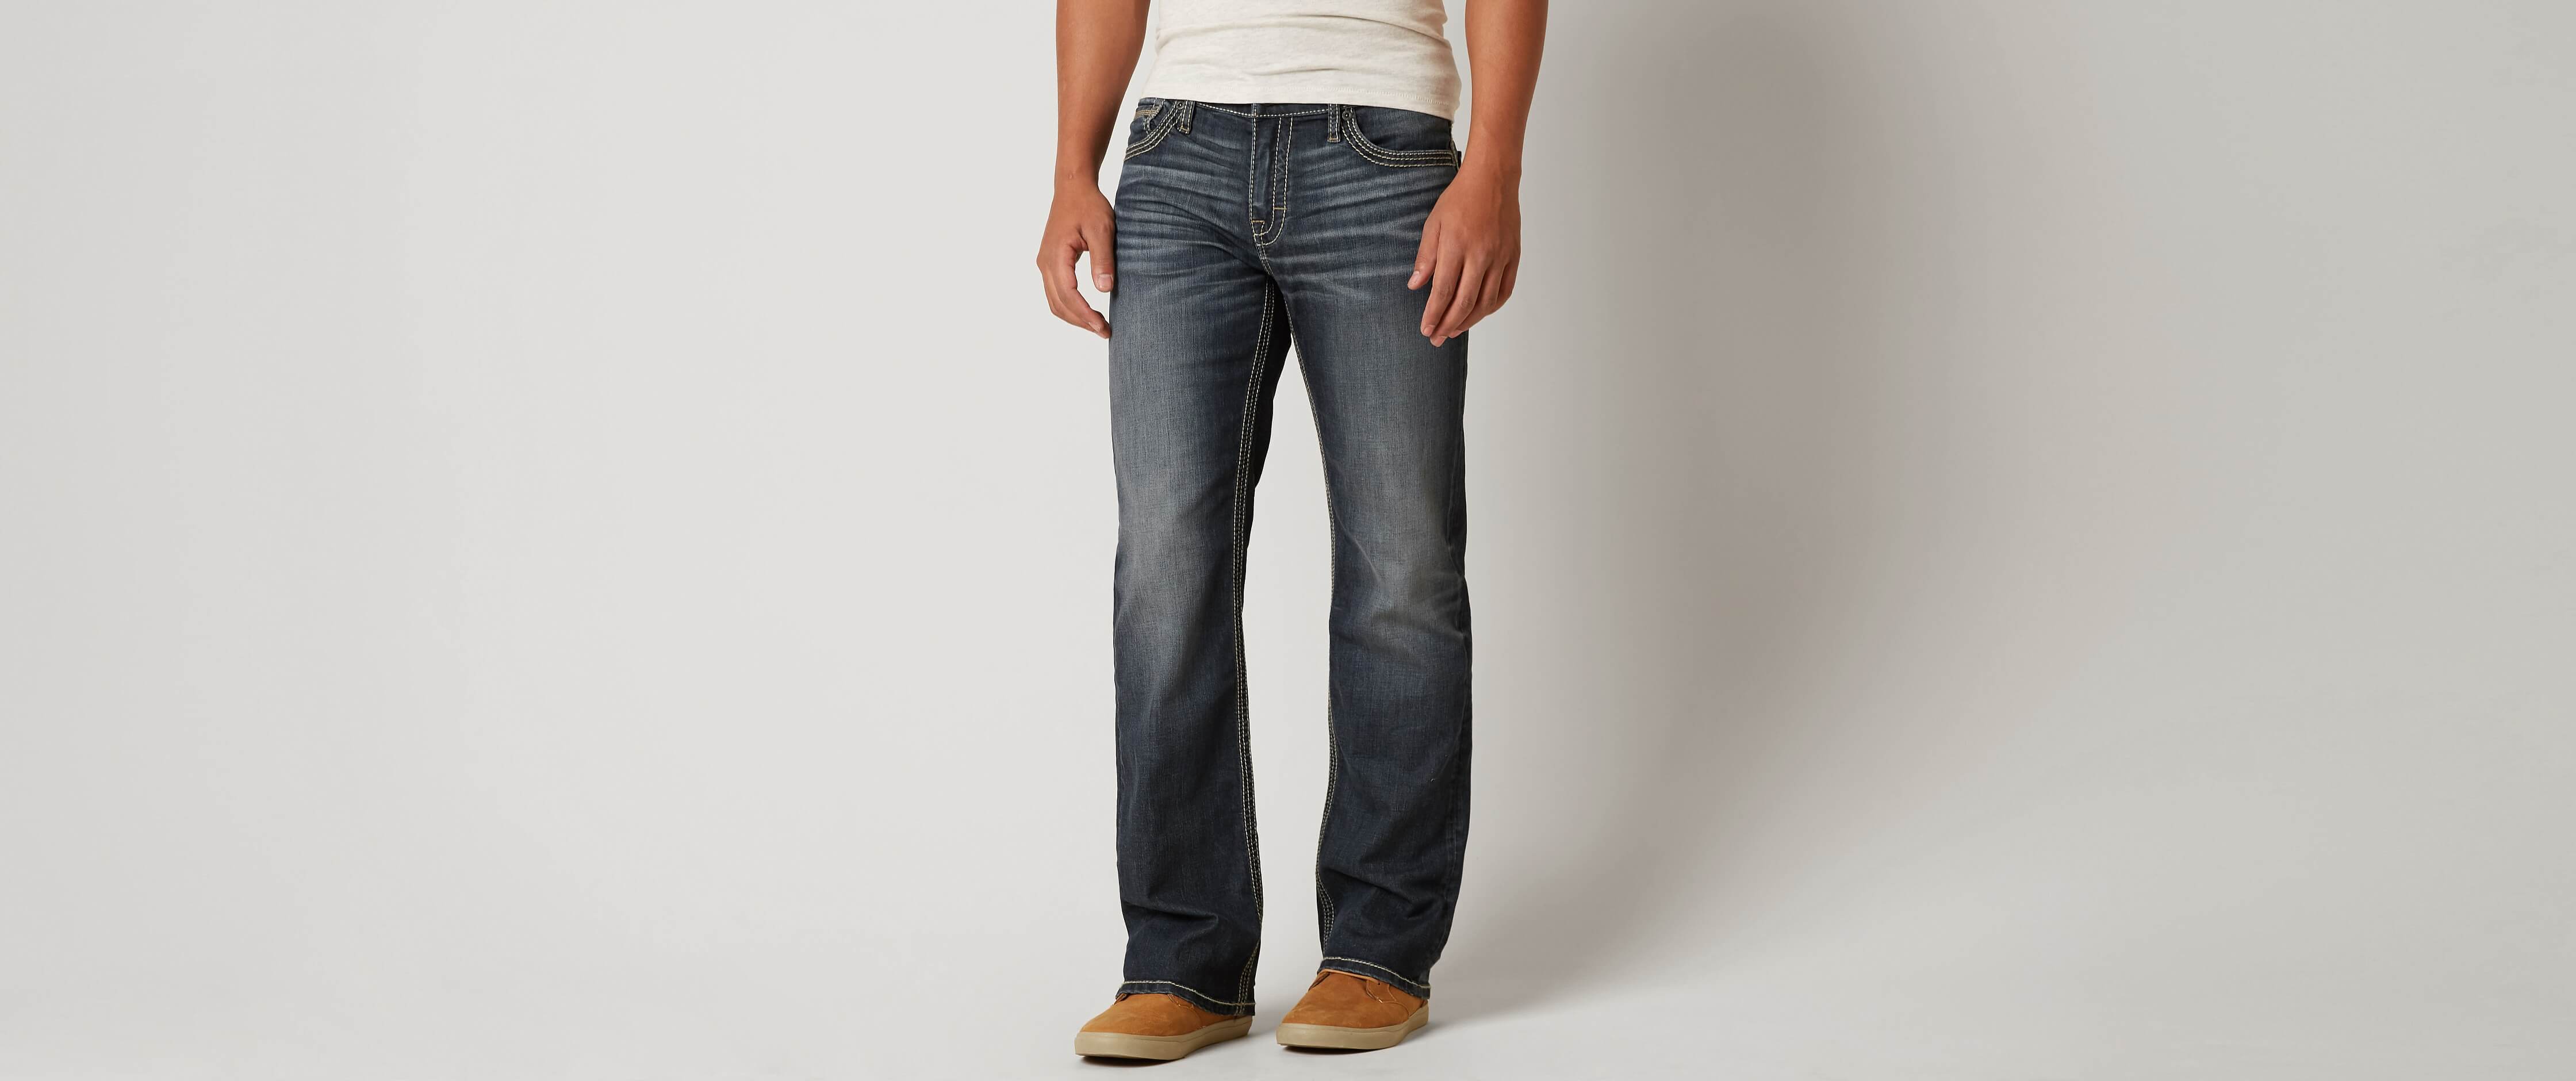 buy cheap levis jeans online